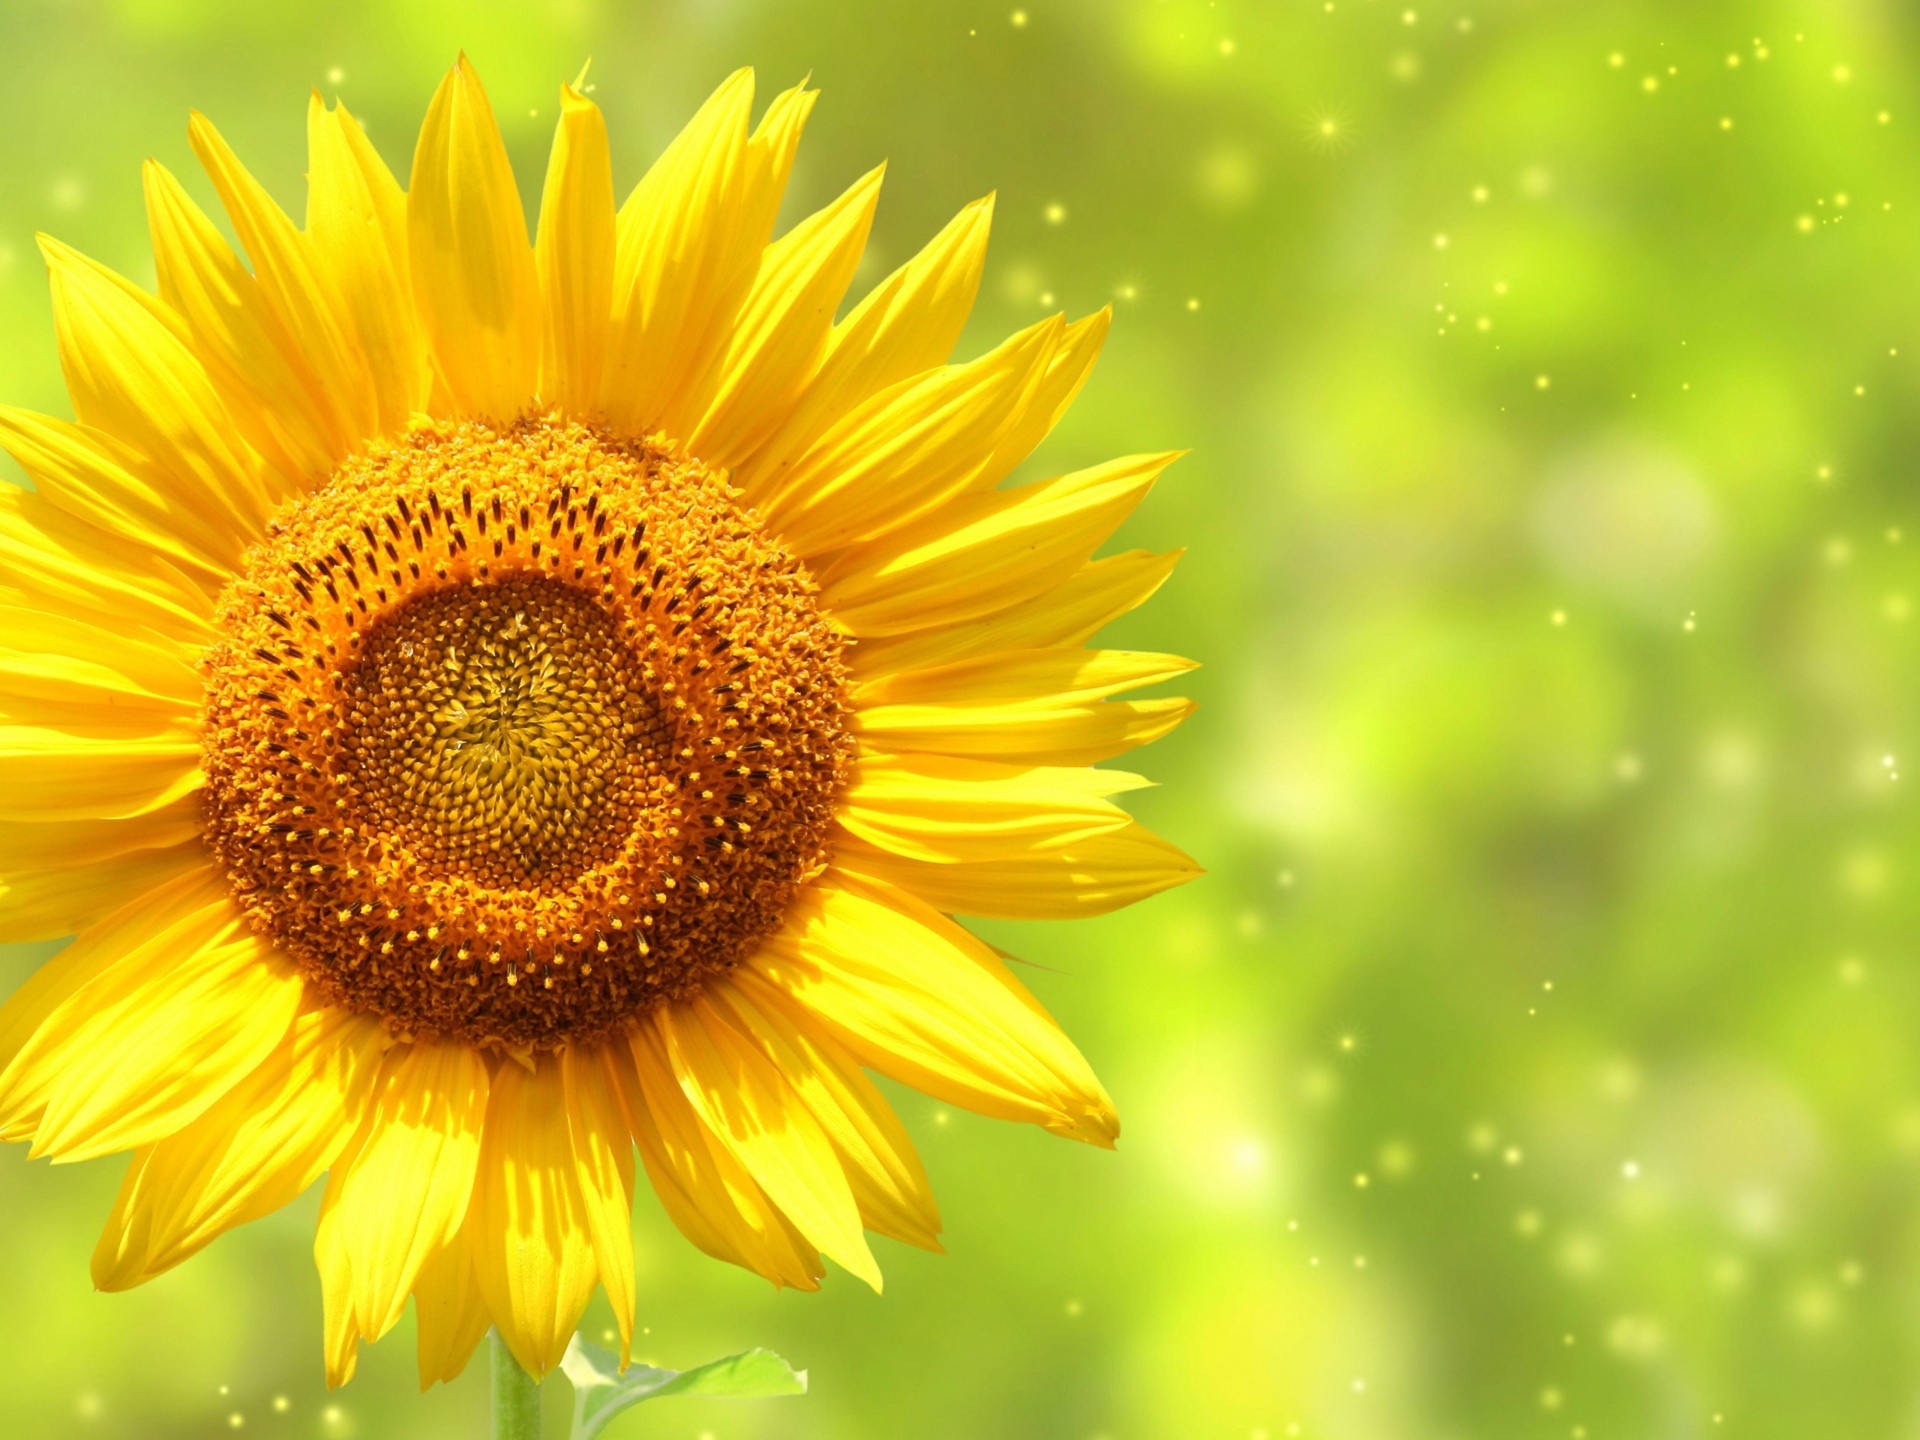 The Yellow Sunflower